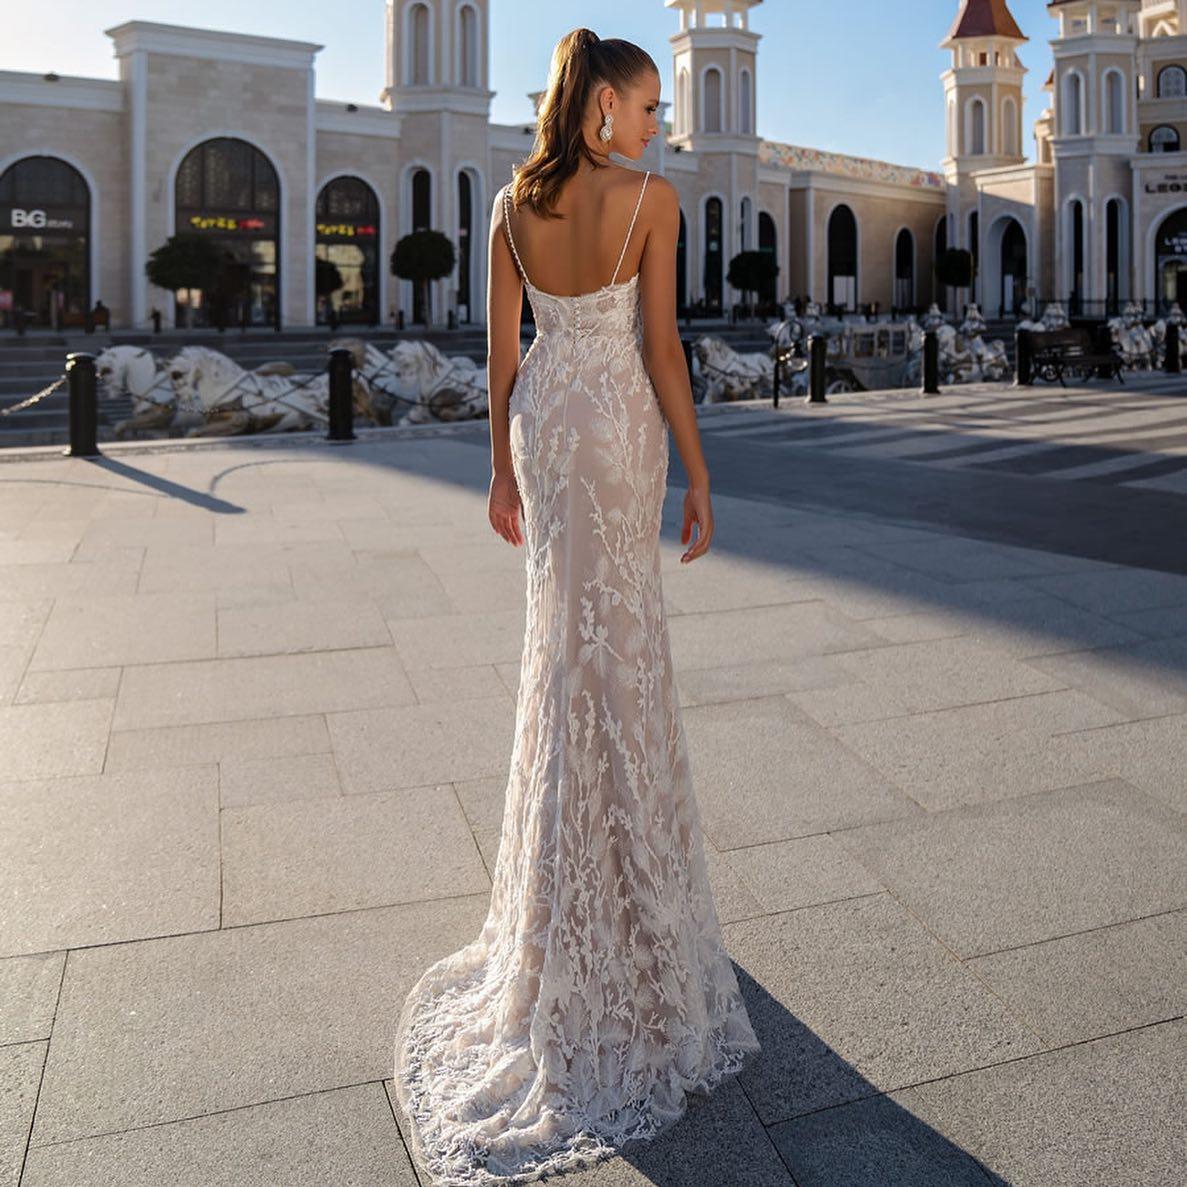 Νυφικό φορέμα στενή γραμμή Περι Γάμου Καβρουδάκη